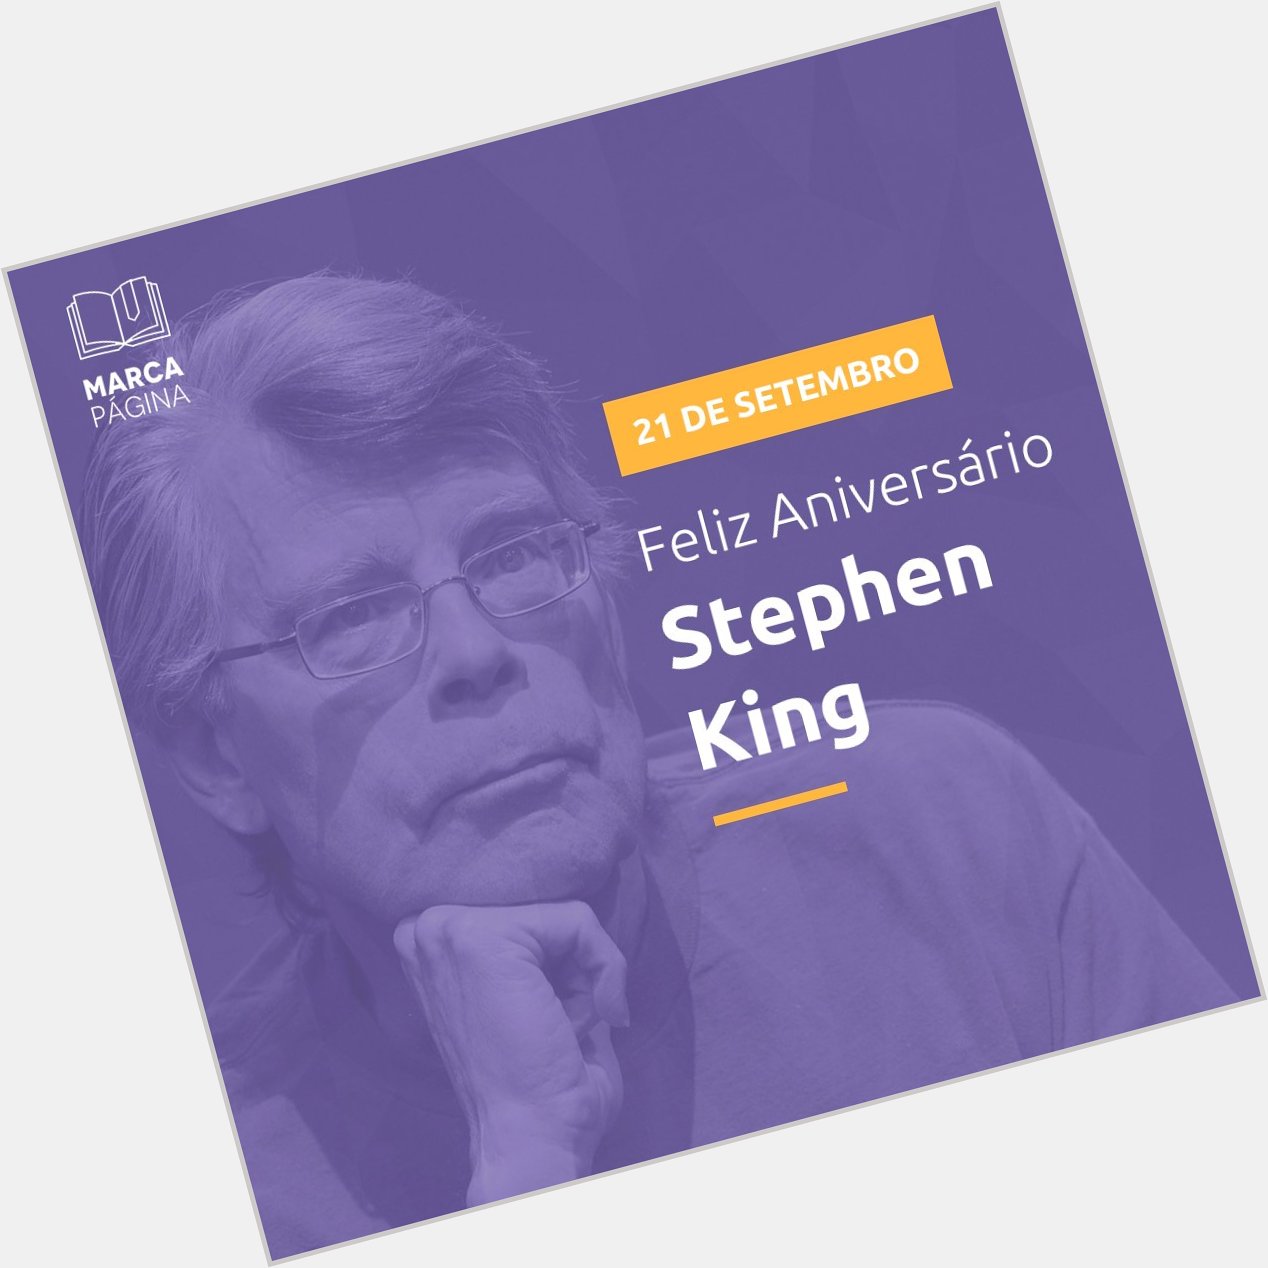 Desejamos ao Stephen King longos anos e belos livros! Ou será o contrário?  Happy birthday 